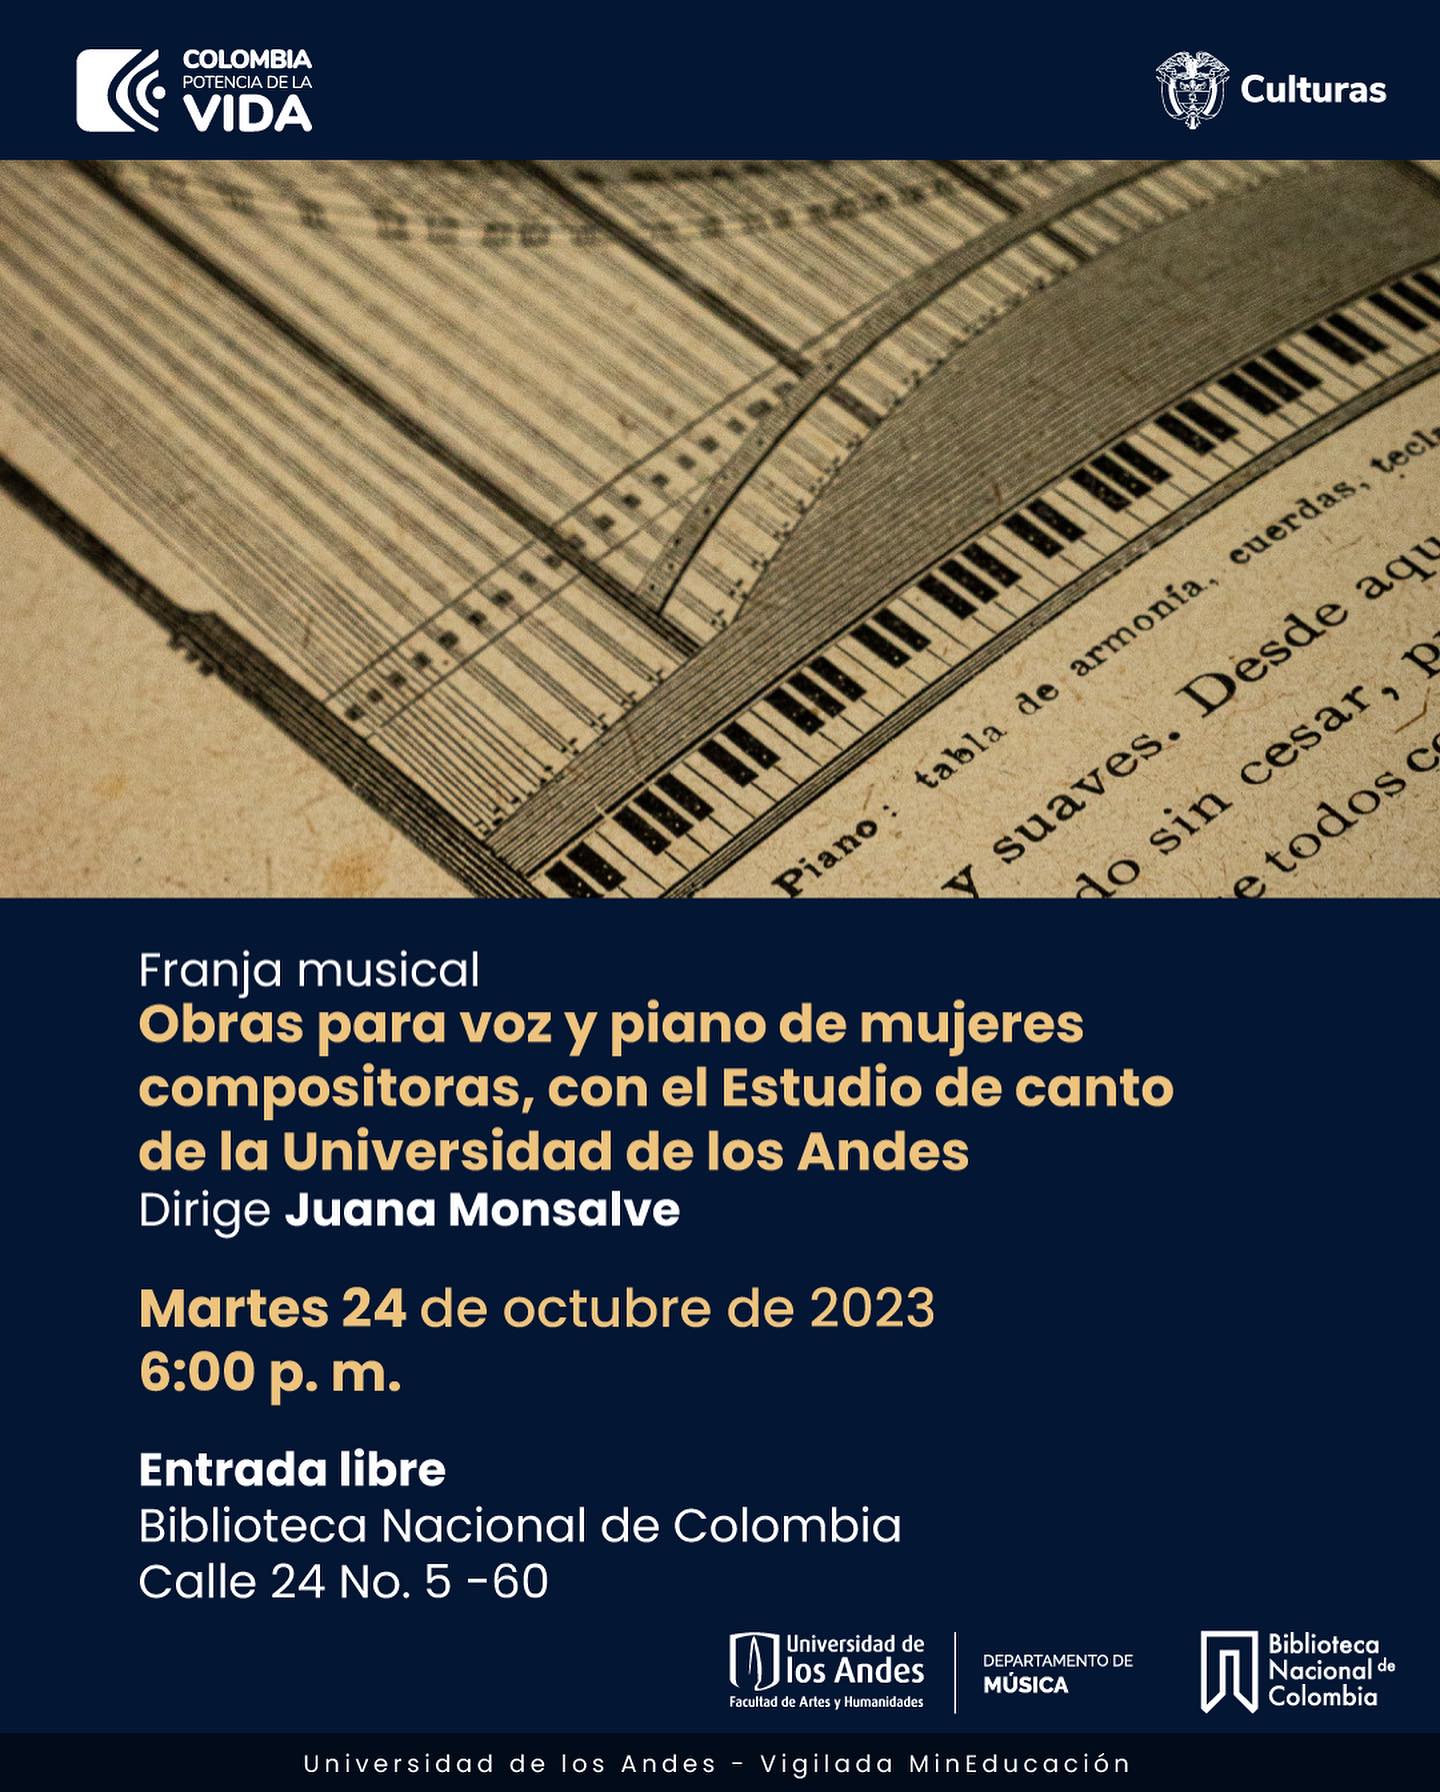 Martes 24 de octubre de 2023 a las 6:00 p.m. en la Biblioteca Nacional de Colombia